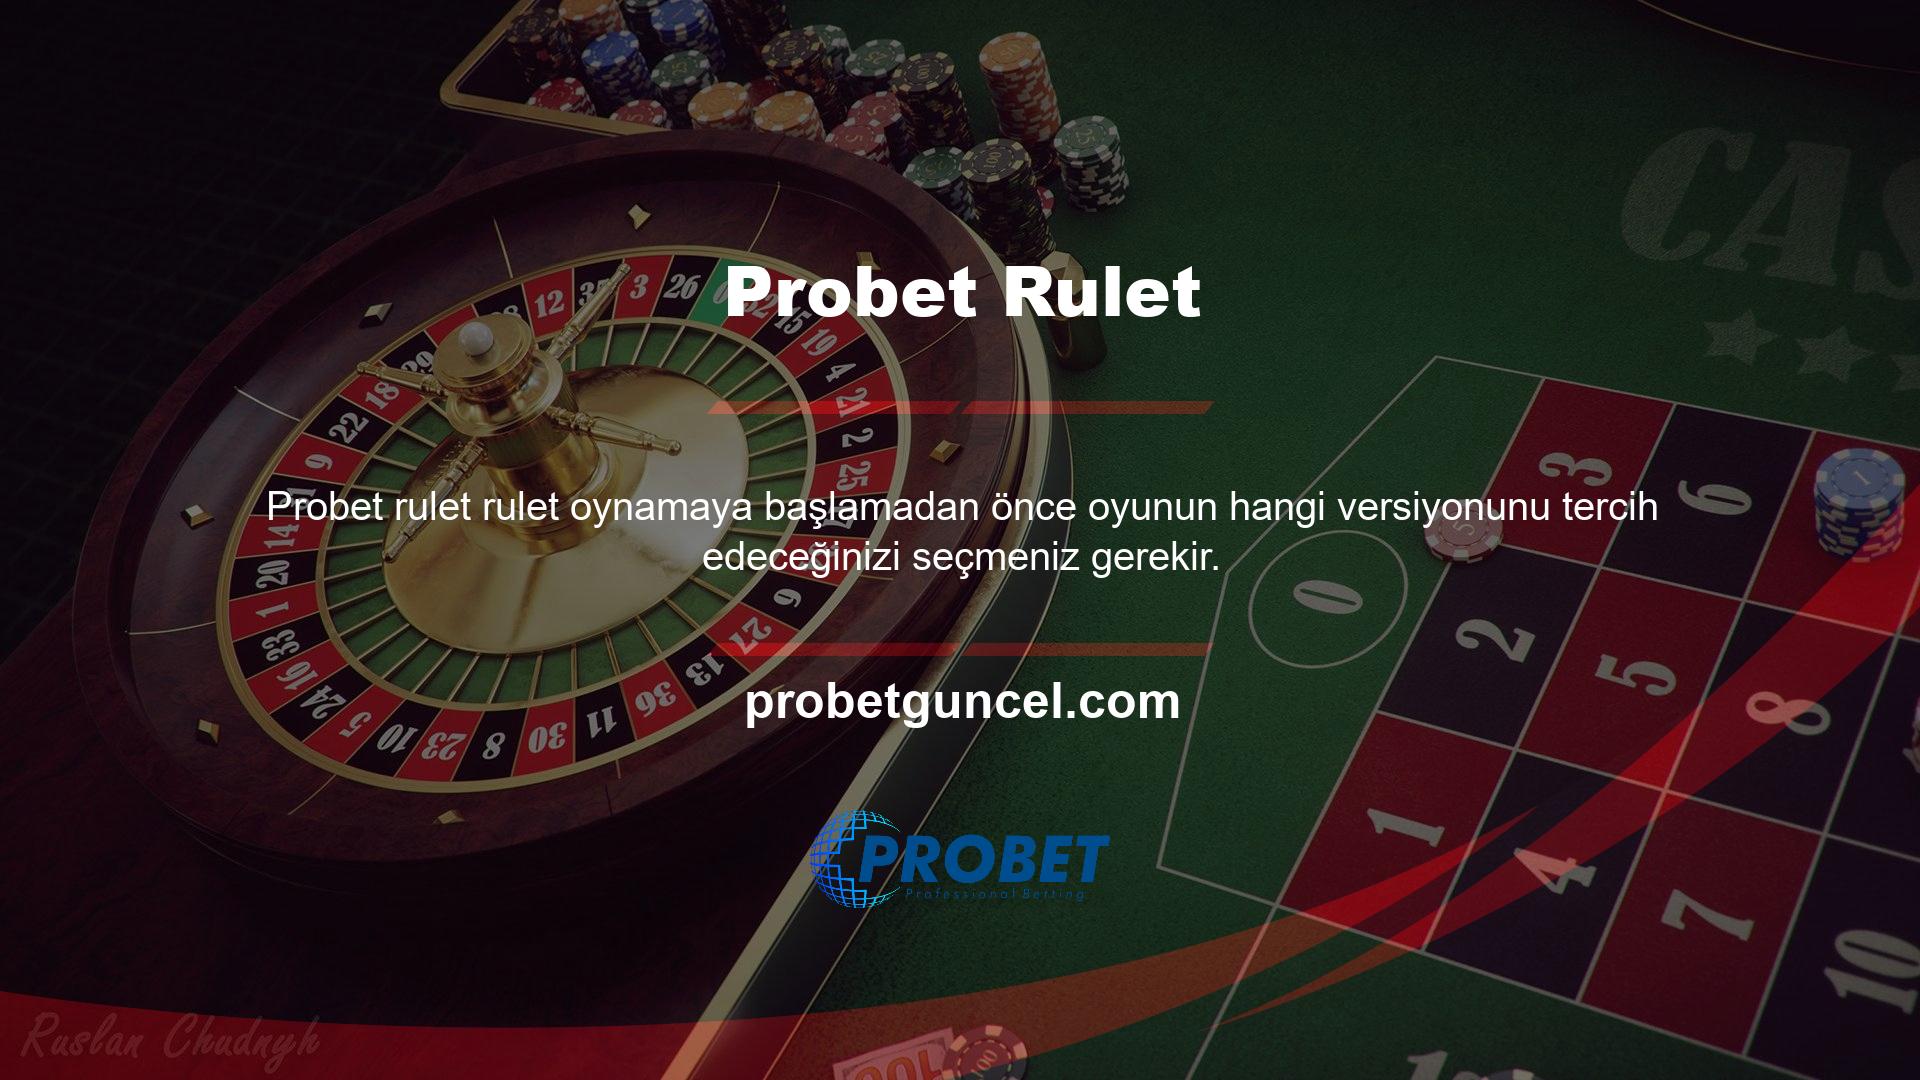 Rulet, gerçek zamanlı ve video aracılığıyla oynanan bir oyundur